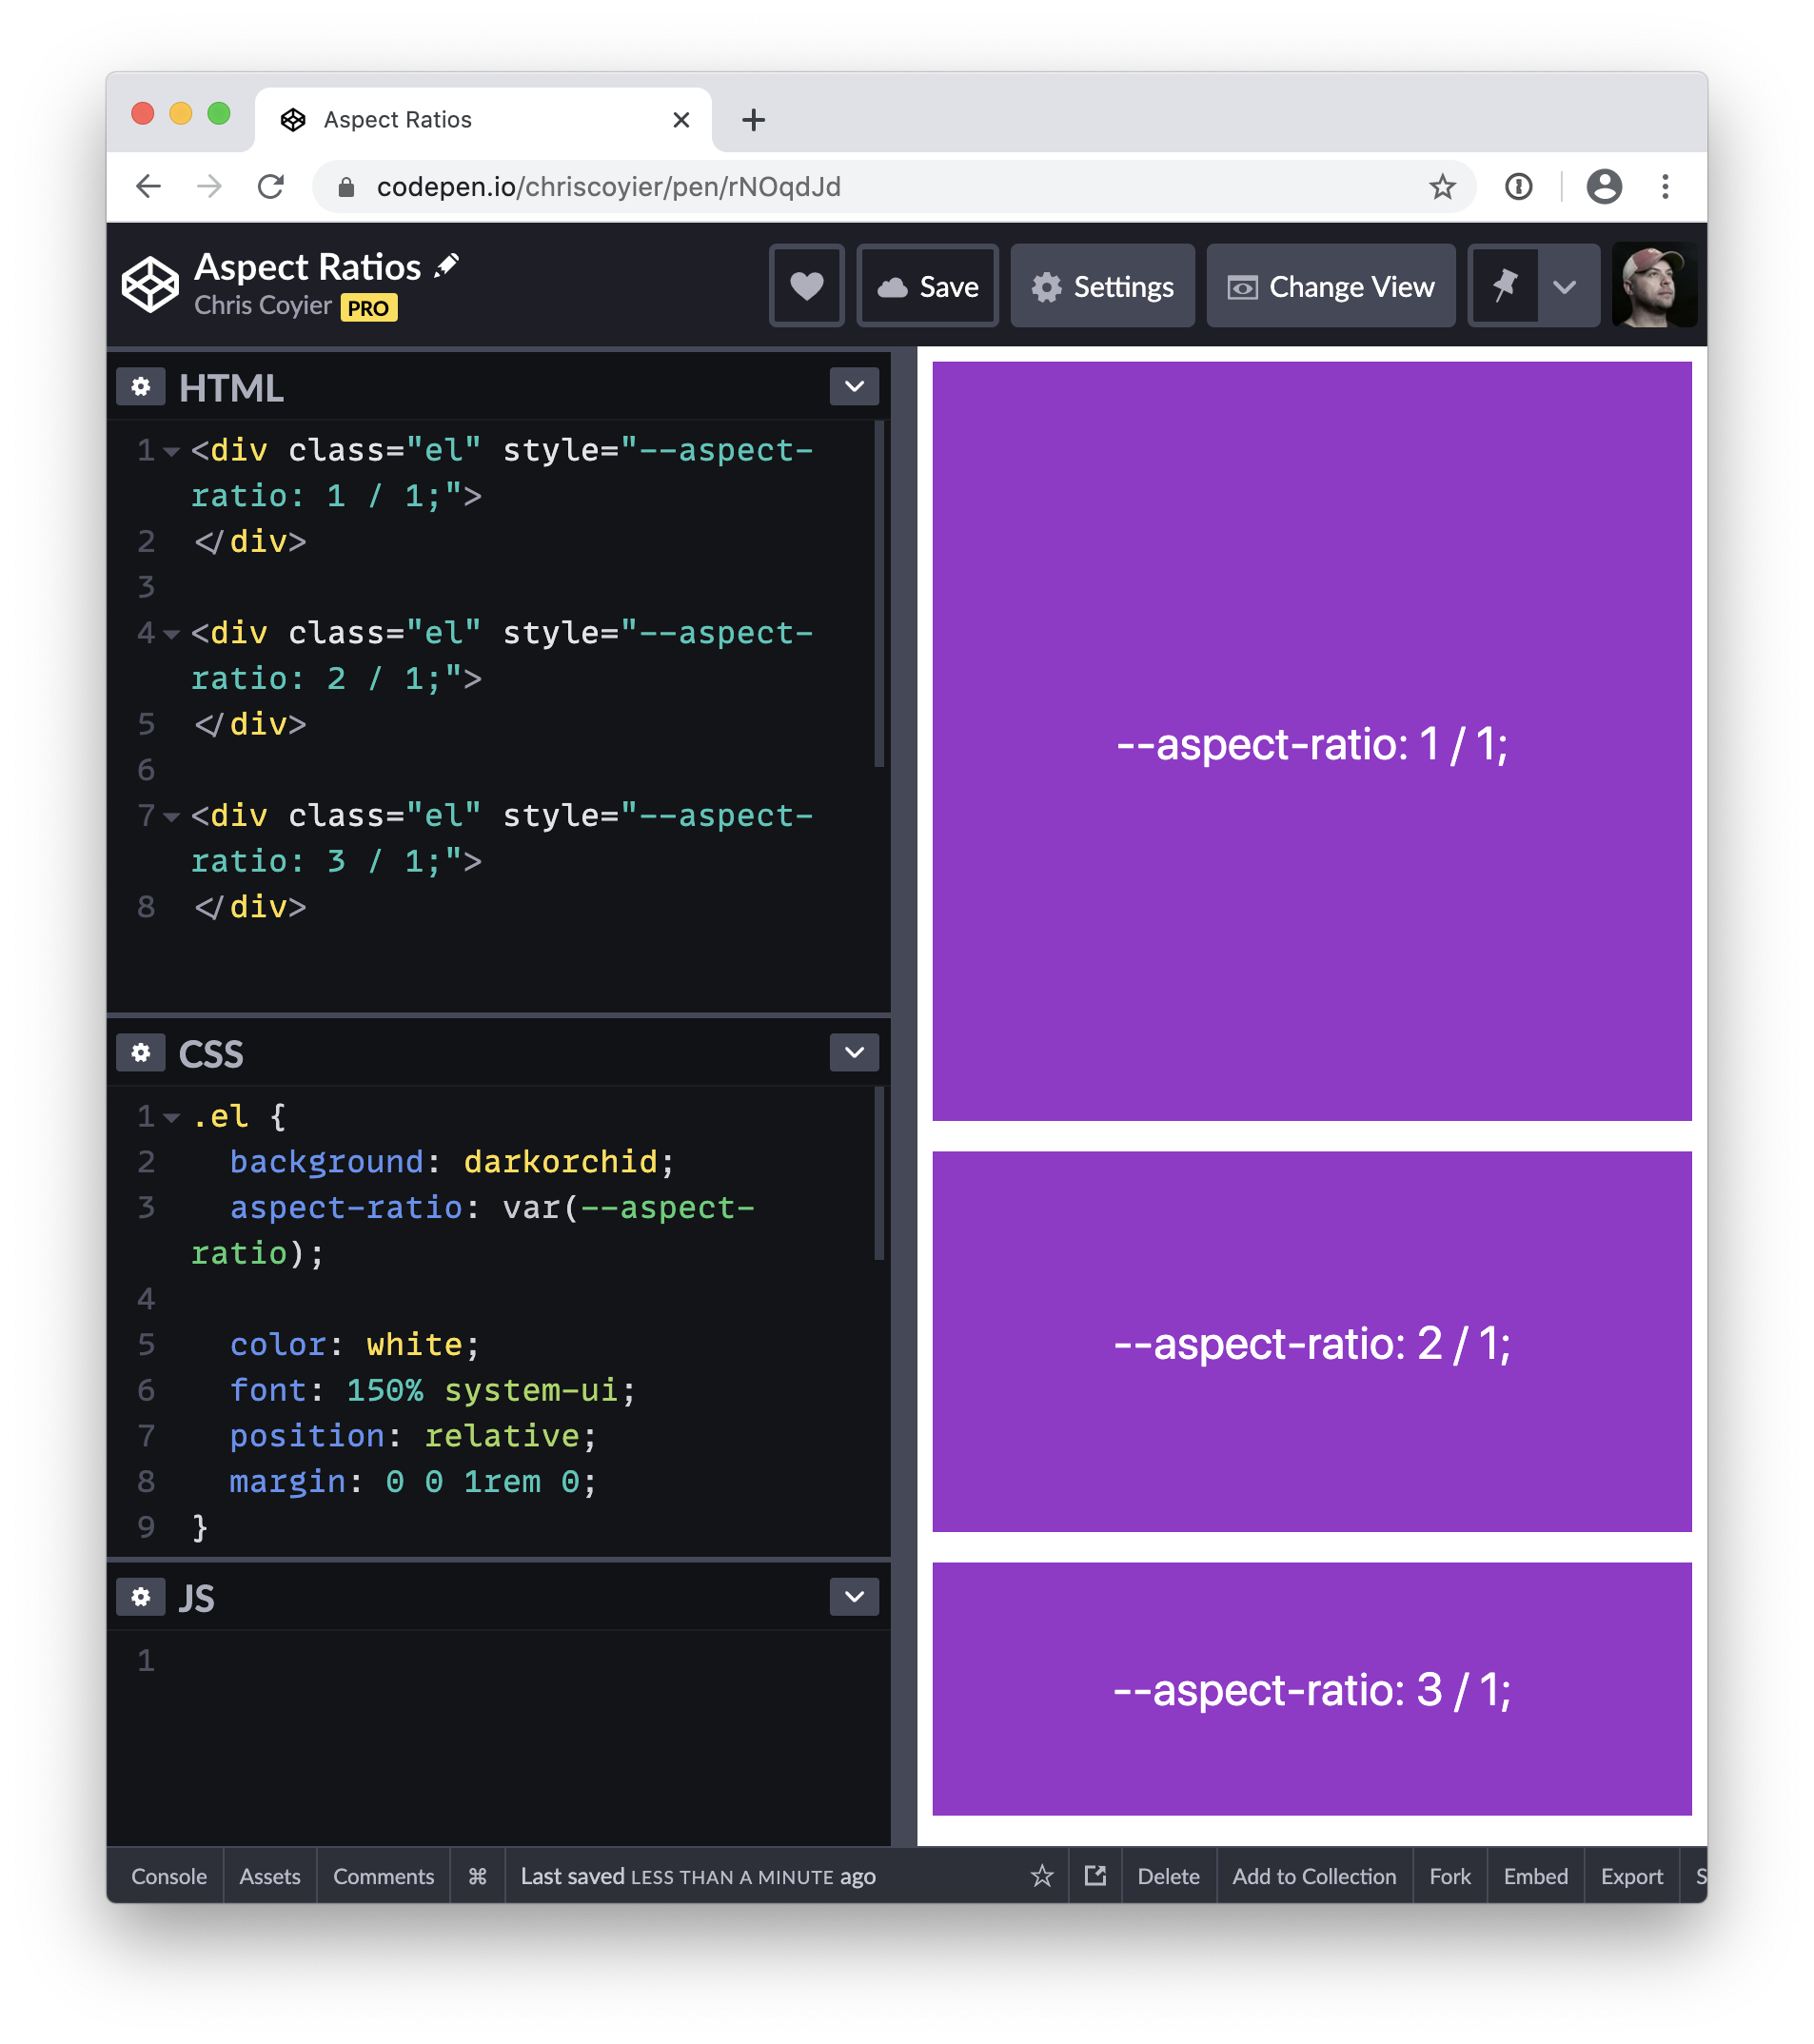 Tỉ lệ khung hình với CSS: Bạn có muốn tìm hiểu cách sử dụng CSS để điều chỉnh tỉ lệ khung hình một cách dễ dàng và hiệu quả? Hãy đến với hình ảnh của chúng tôi! Chúng tôi sẽ hướng dẫn chi tiết cách làm cho trang web của bạn trông đẹp hơn và chuyên nghiệp hơn bằng việc điều chỉnh tỉ lệ khung hình bằng CSS.